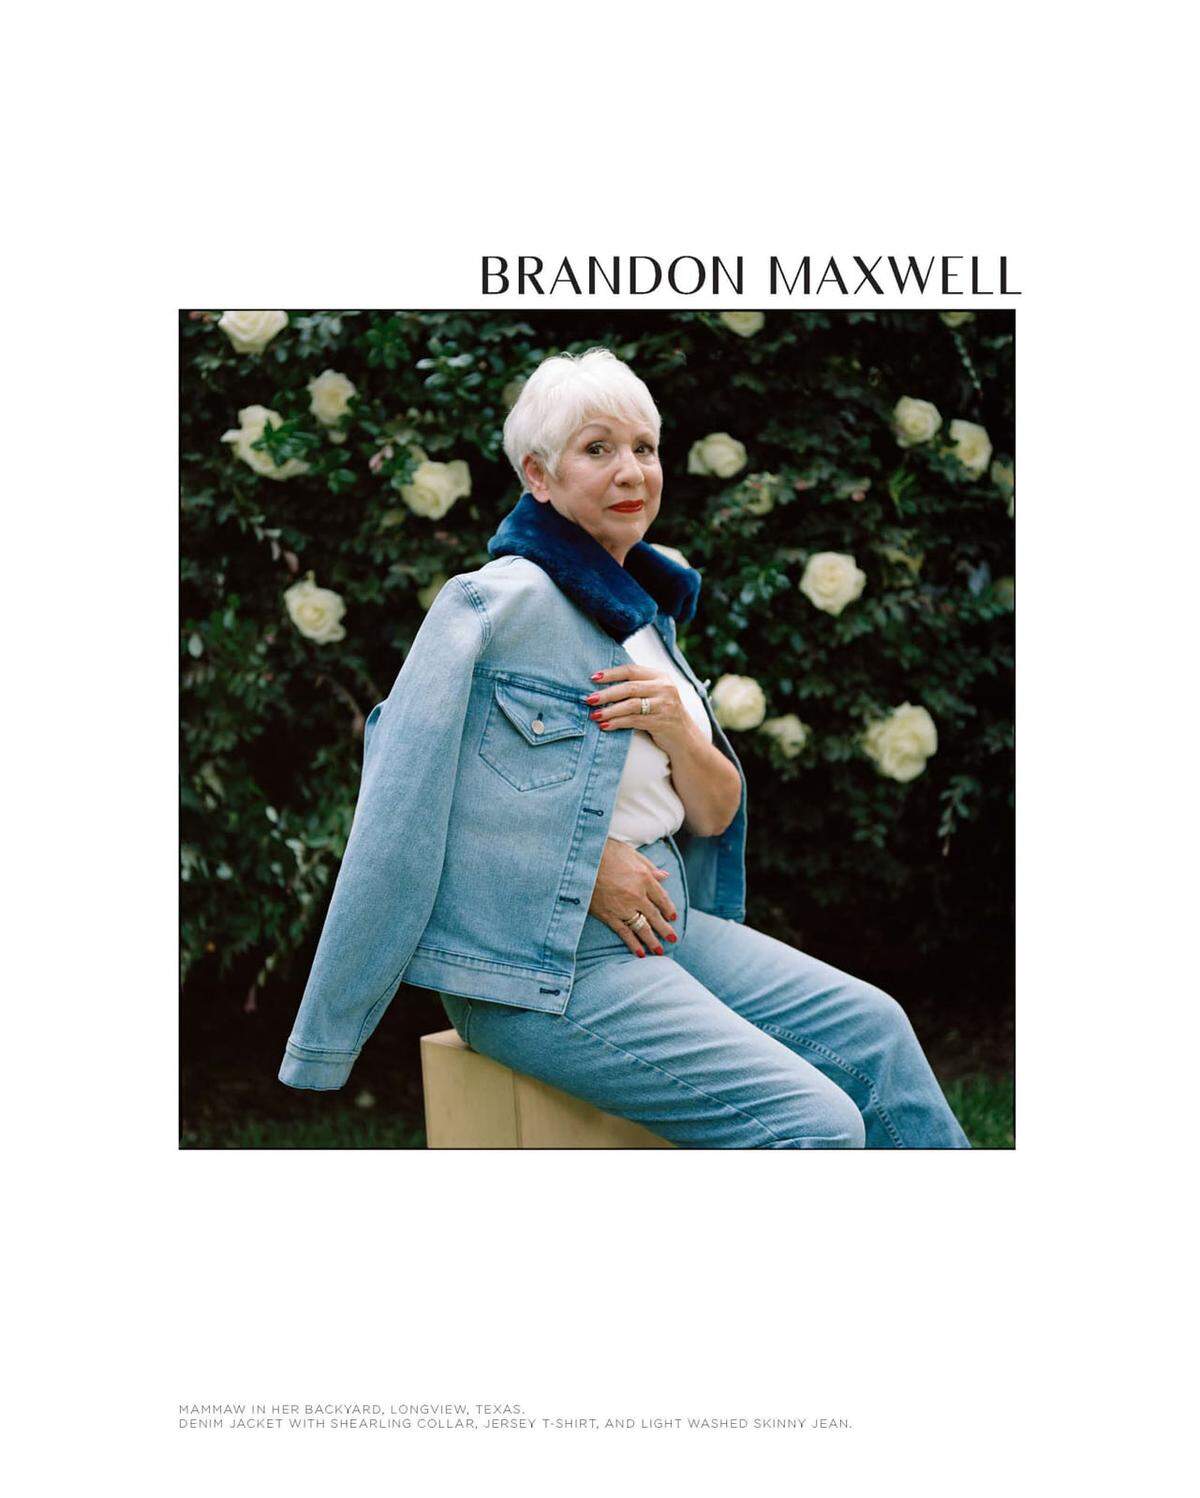 Designer Brandon Maxwell hat für seine  Modekampagne ein ganz besonderes Model engagiert: Seine 81-jährige Großmutter Louise Johnson, auch "Mammaw" genannt. Die Texanerin, die als Einkäuferin der Luxusmodeboutique Riffs in Longview tätig war, hat den Designer zu seinem Karriereweg inspiriert.